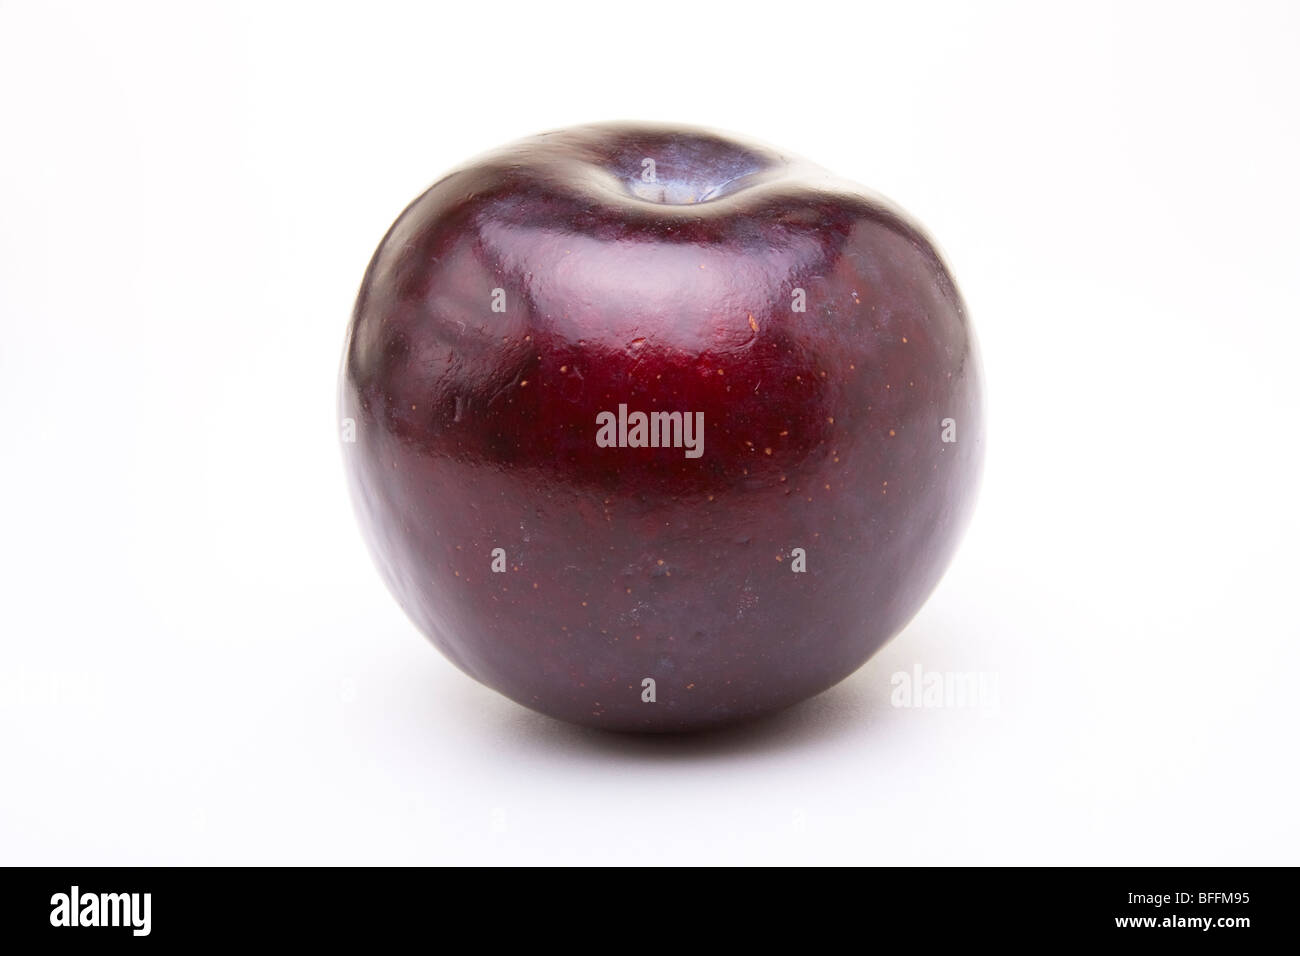 Shiny purple plum isolated against white background. Stock Photo